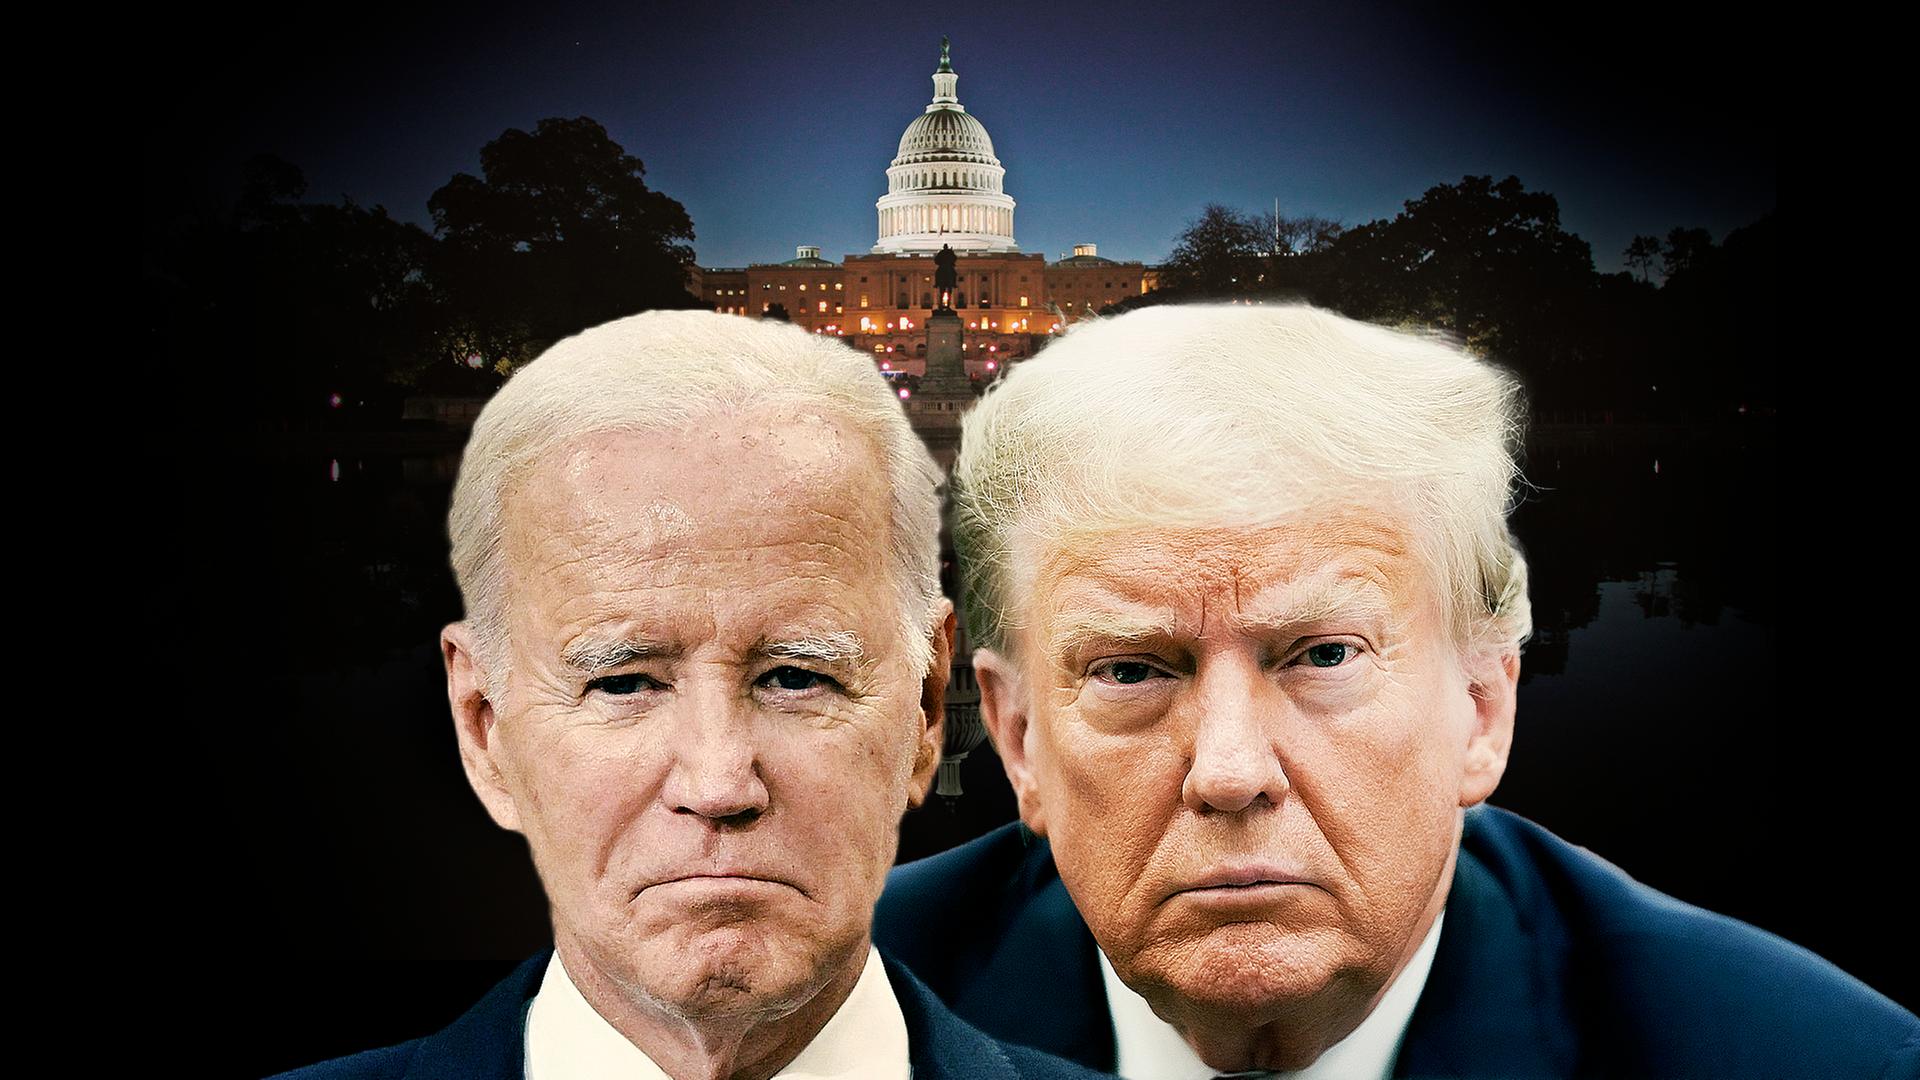 Im Vordergrund die Gesichter von Präsident Biden und Ex-Präsident Trump; im dunklen Hintergrund leuchtet das US-Kapitol.